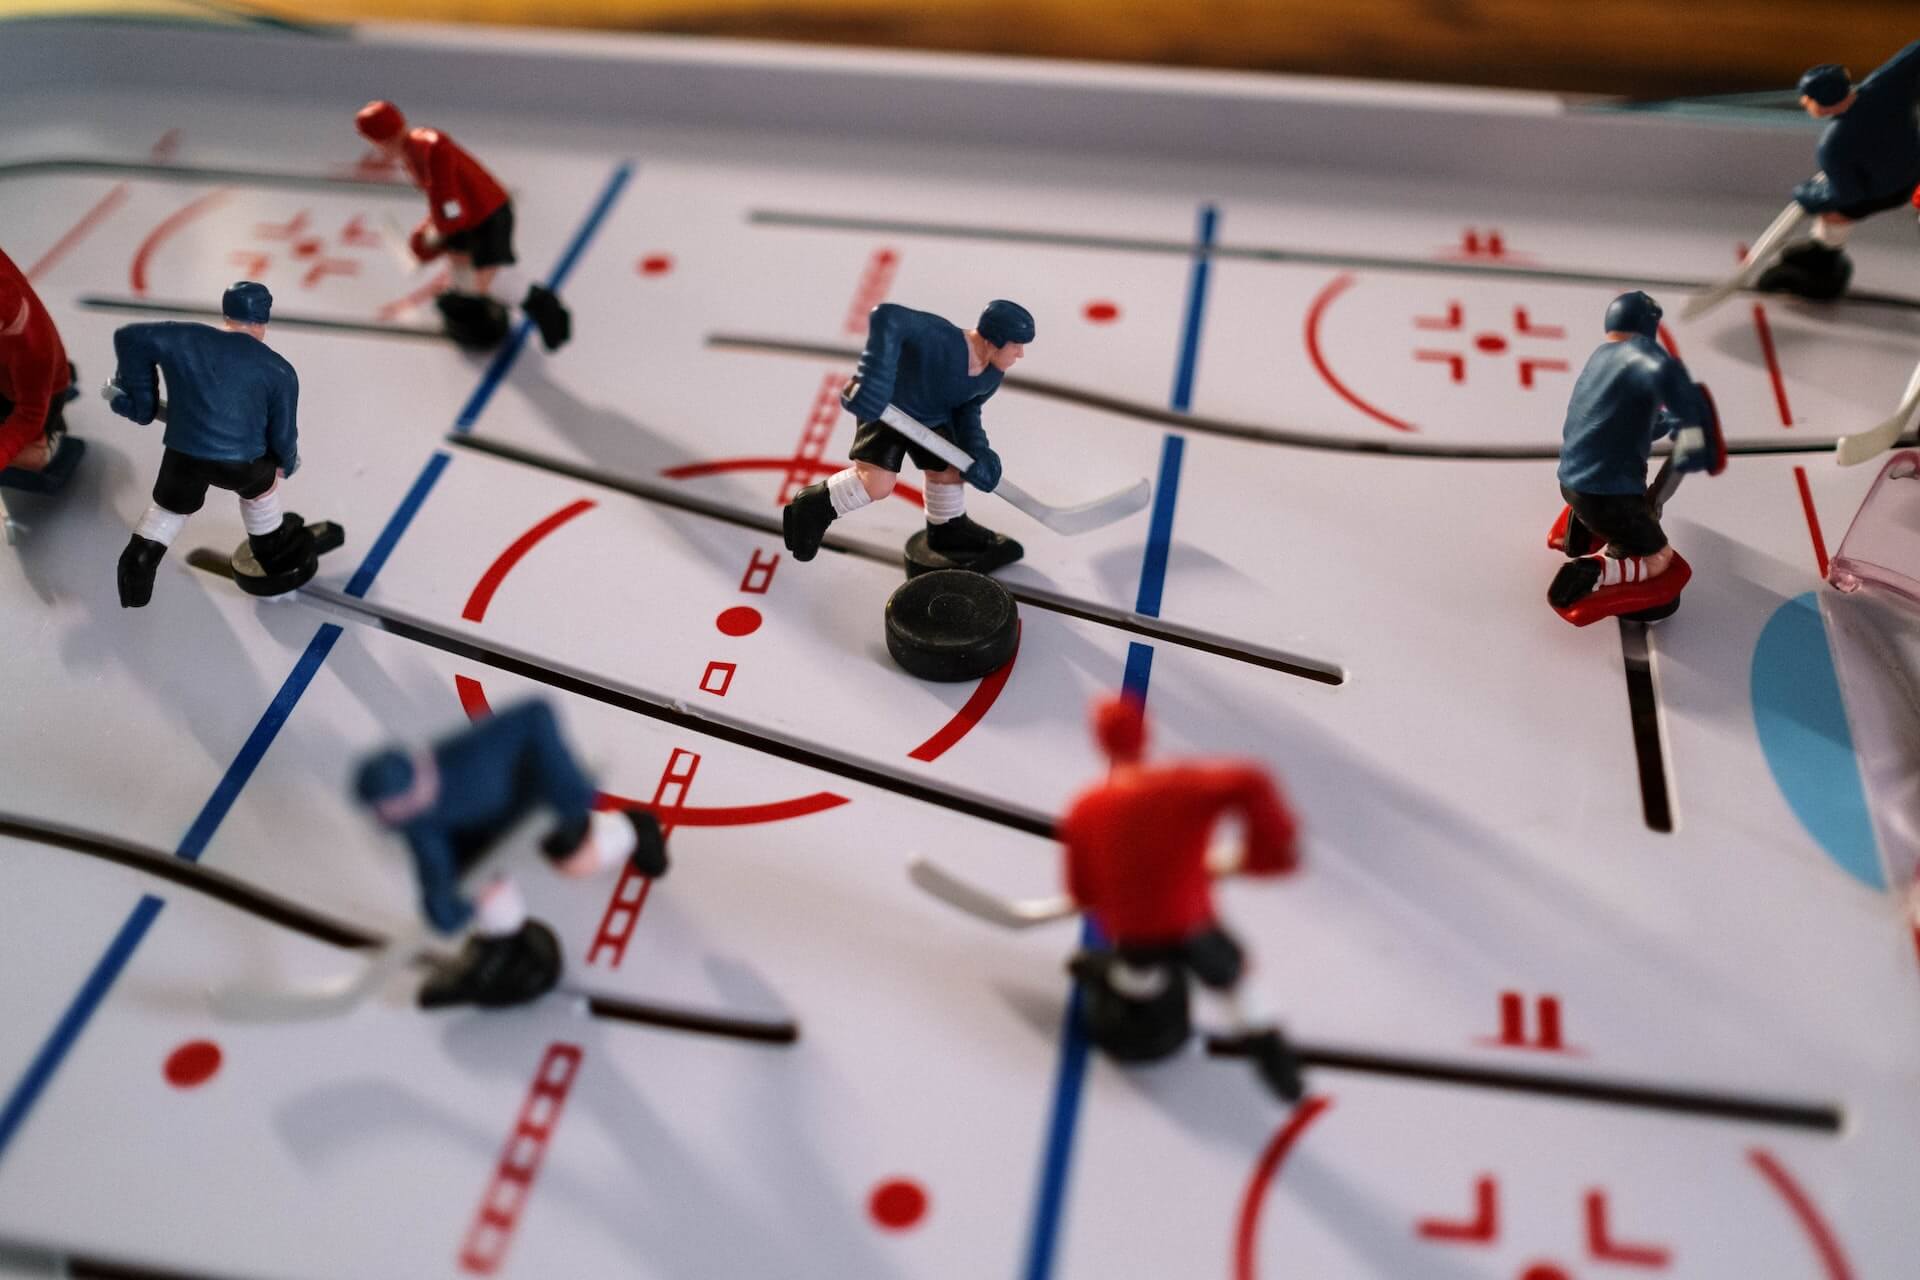 Vintage tabletop hockey game toy